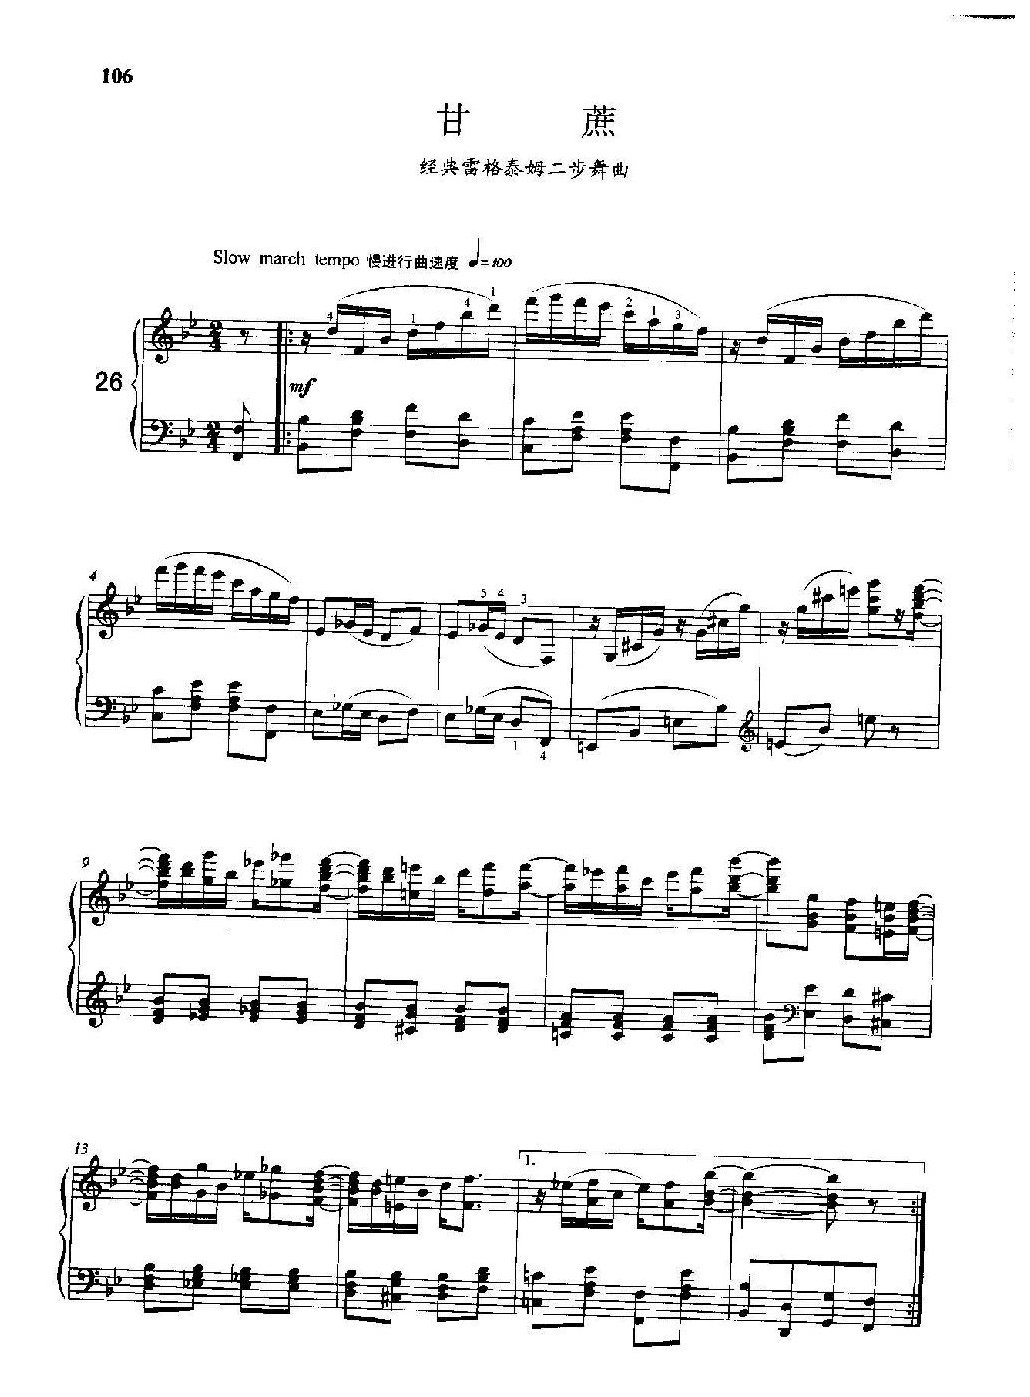 雷格泰姆钢琴乐谱《甘蔗》雷格泰姆之王斯科特·乔普林